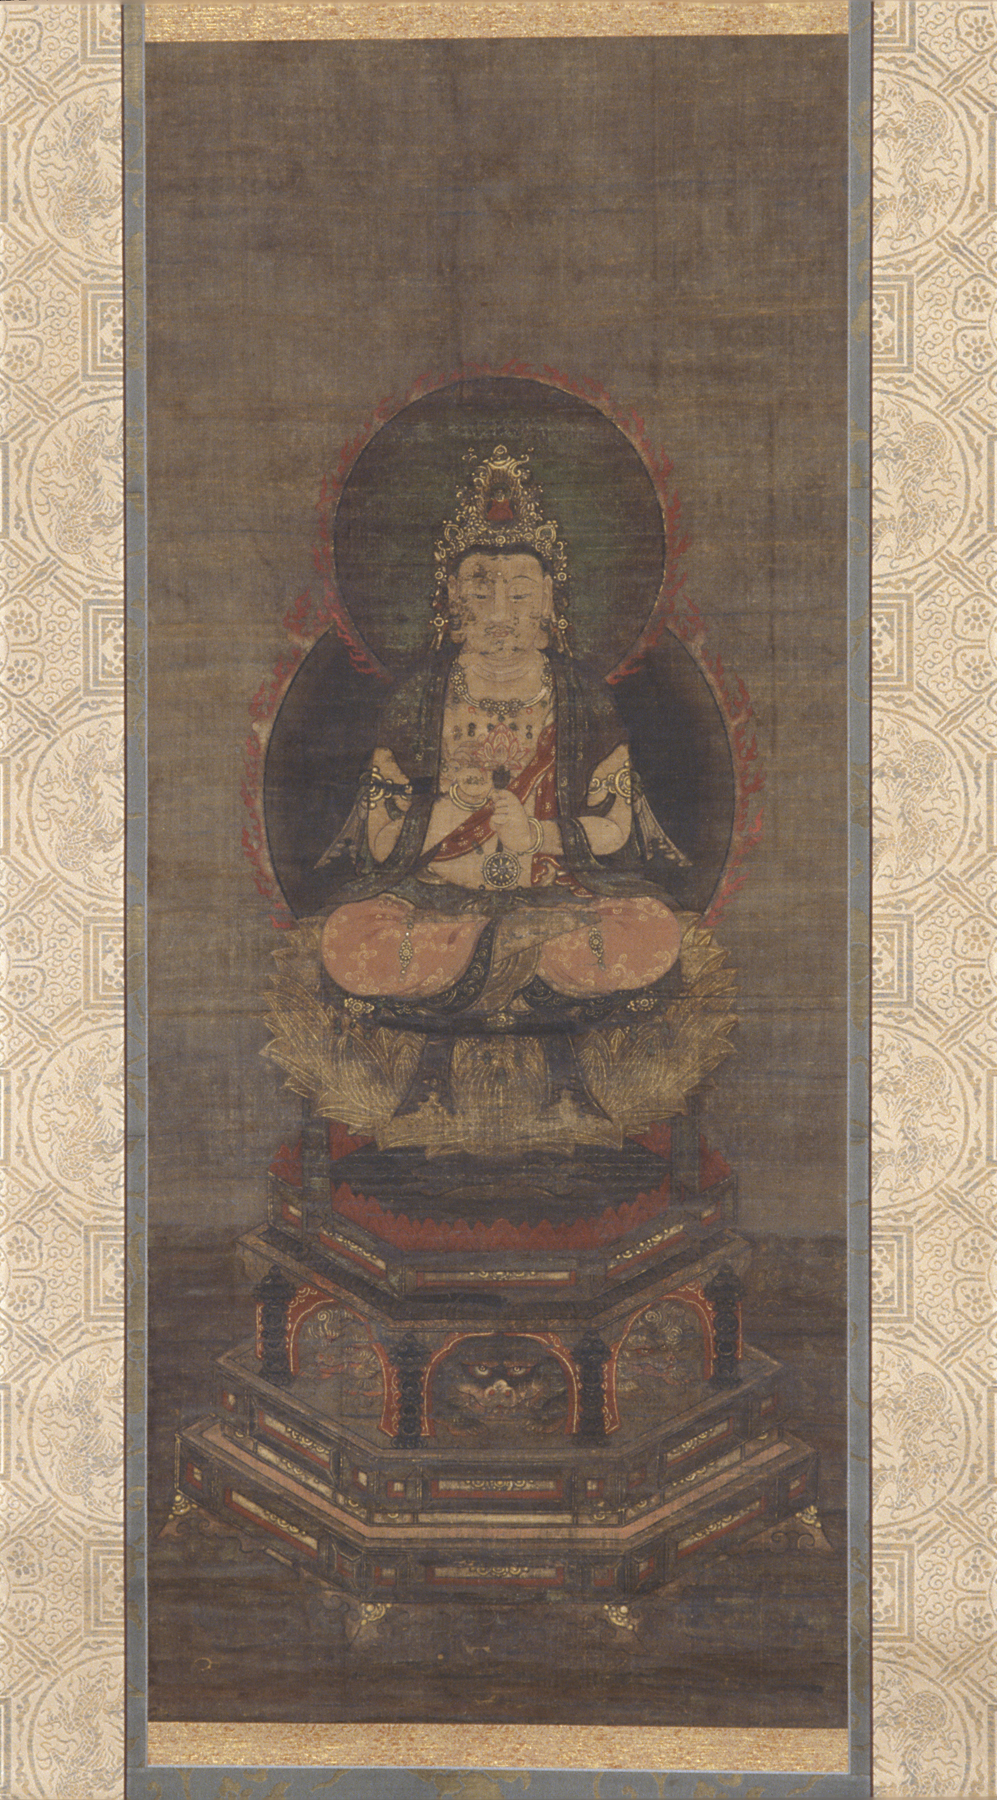 Kannon (Avalokitesvara)